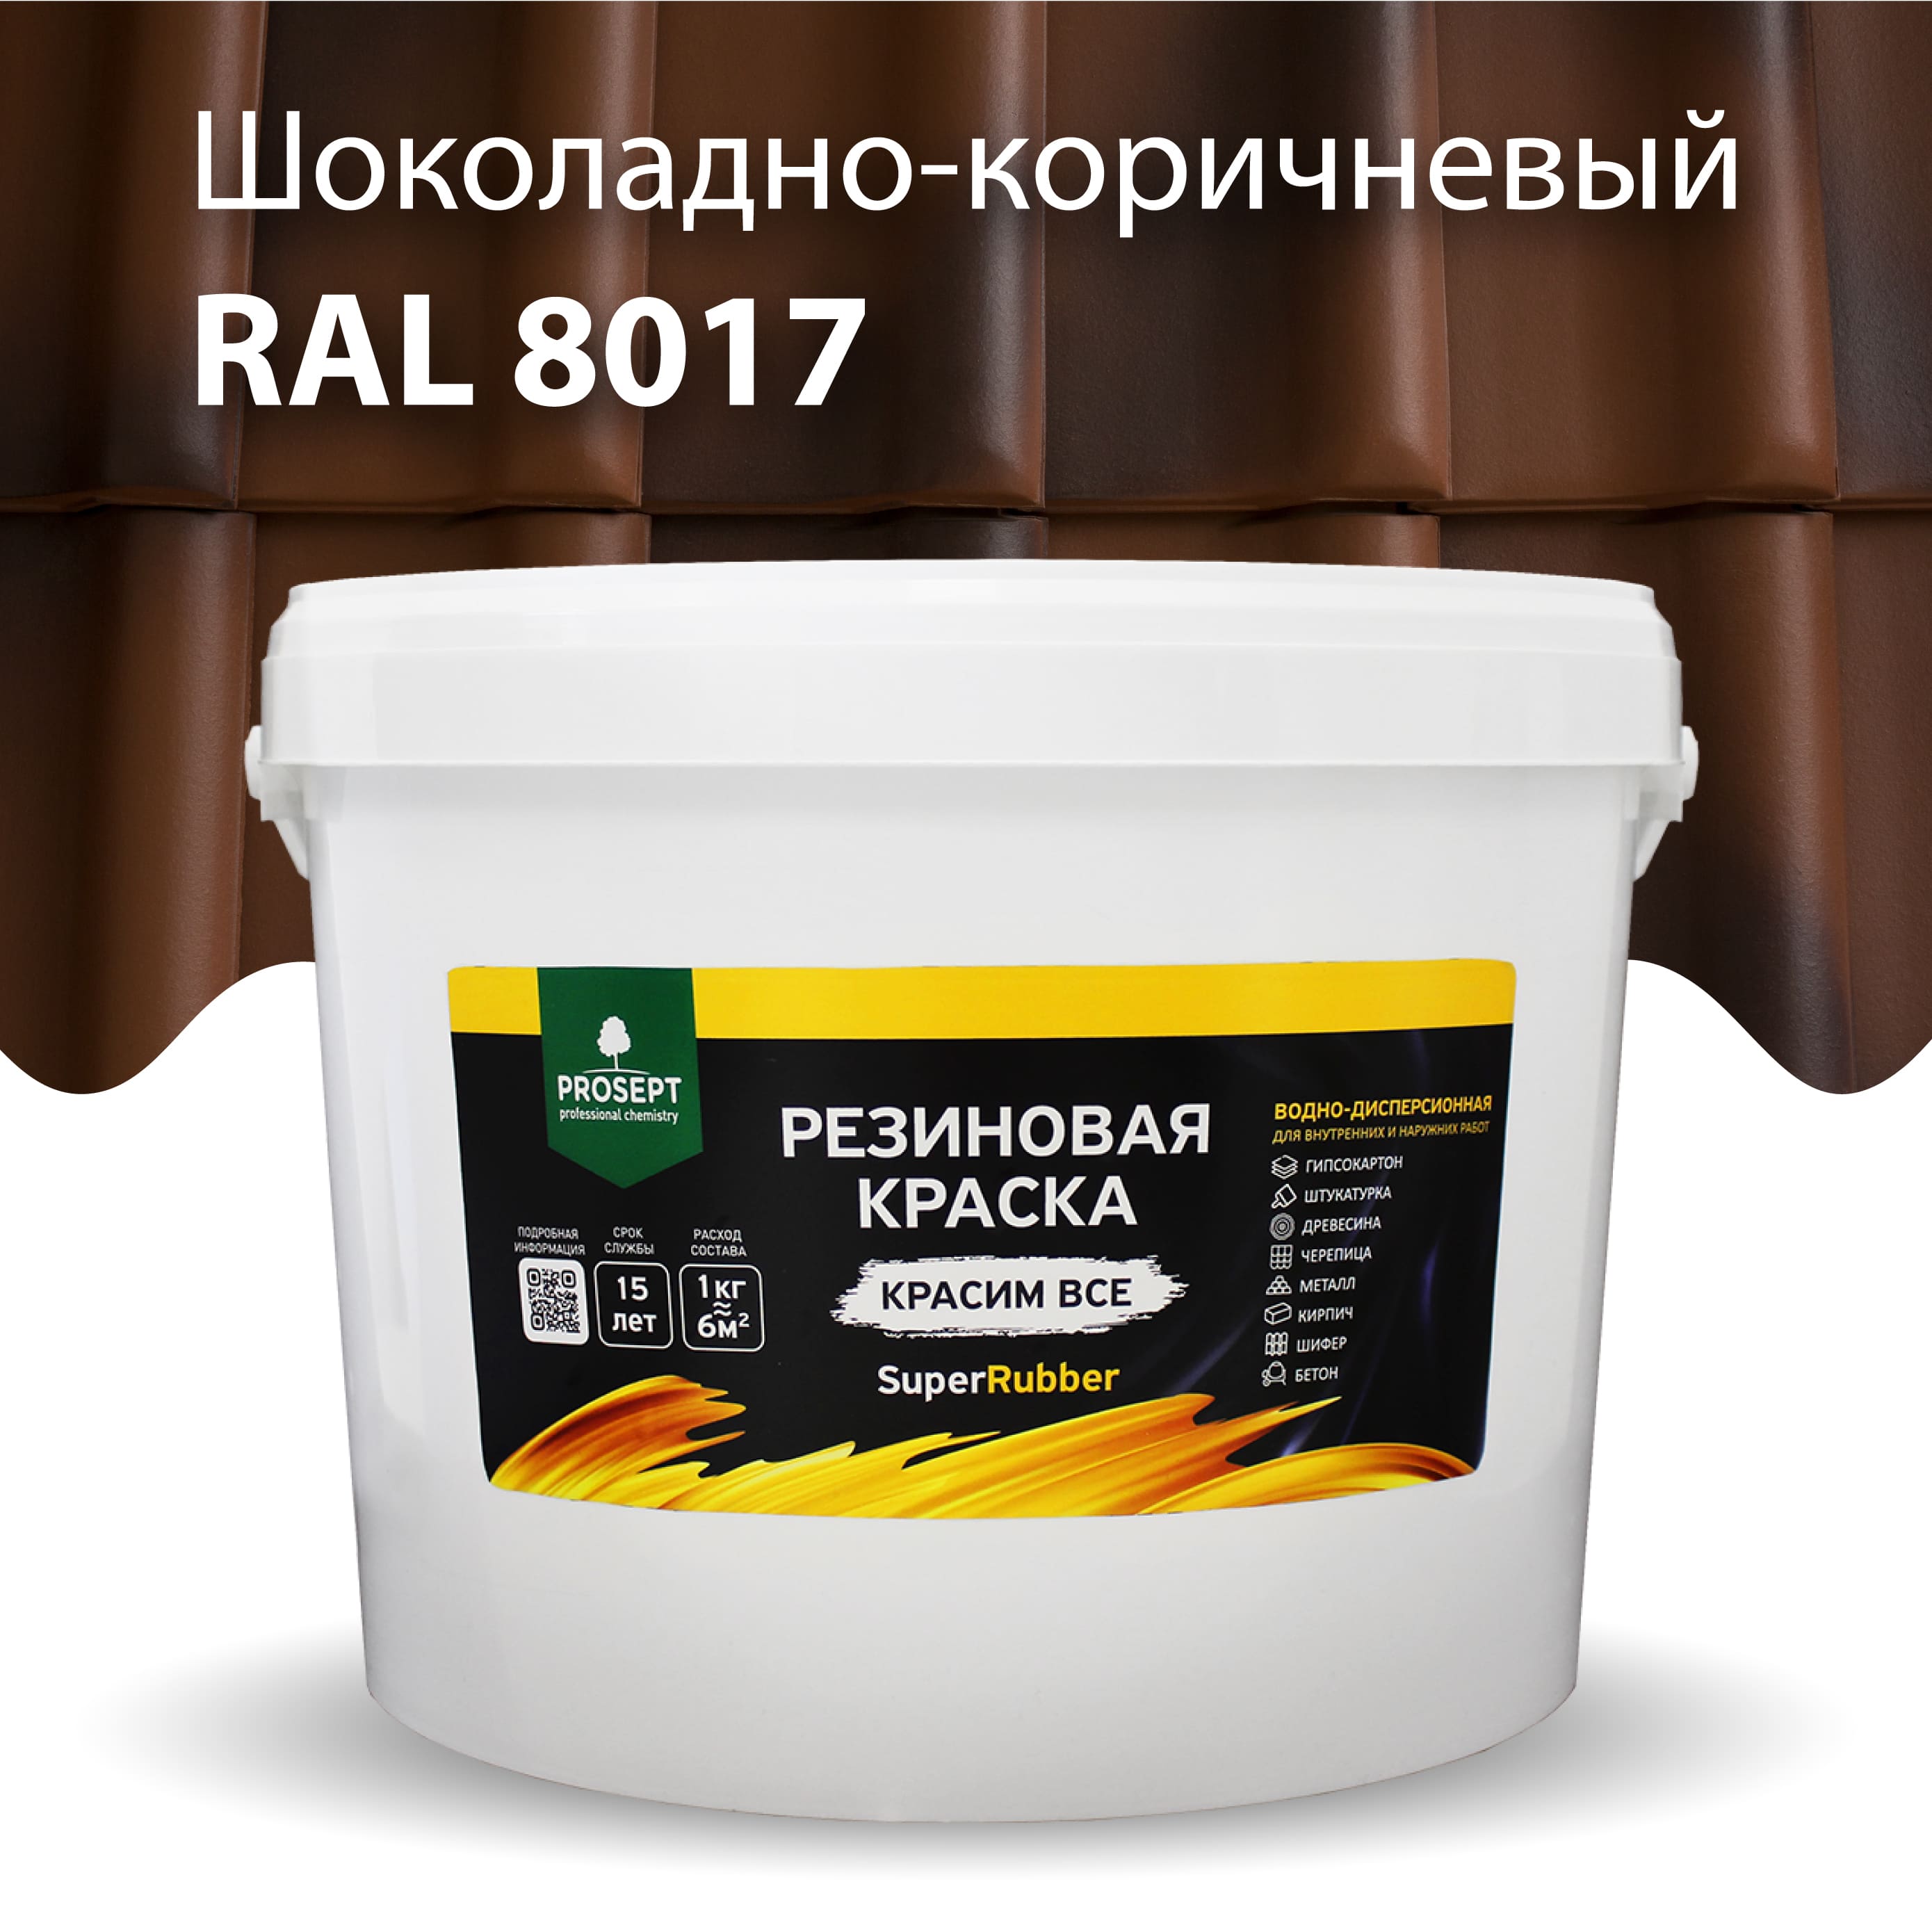 Краска Резиновая краска SuperRubber, RAL 8017 (шоколадно-коричневый), 12 кг